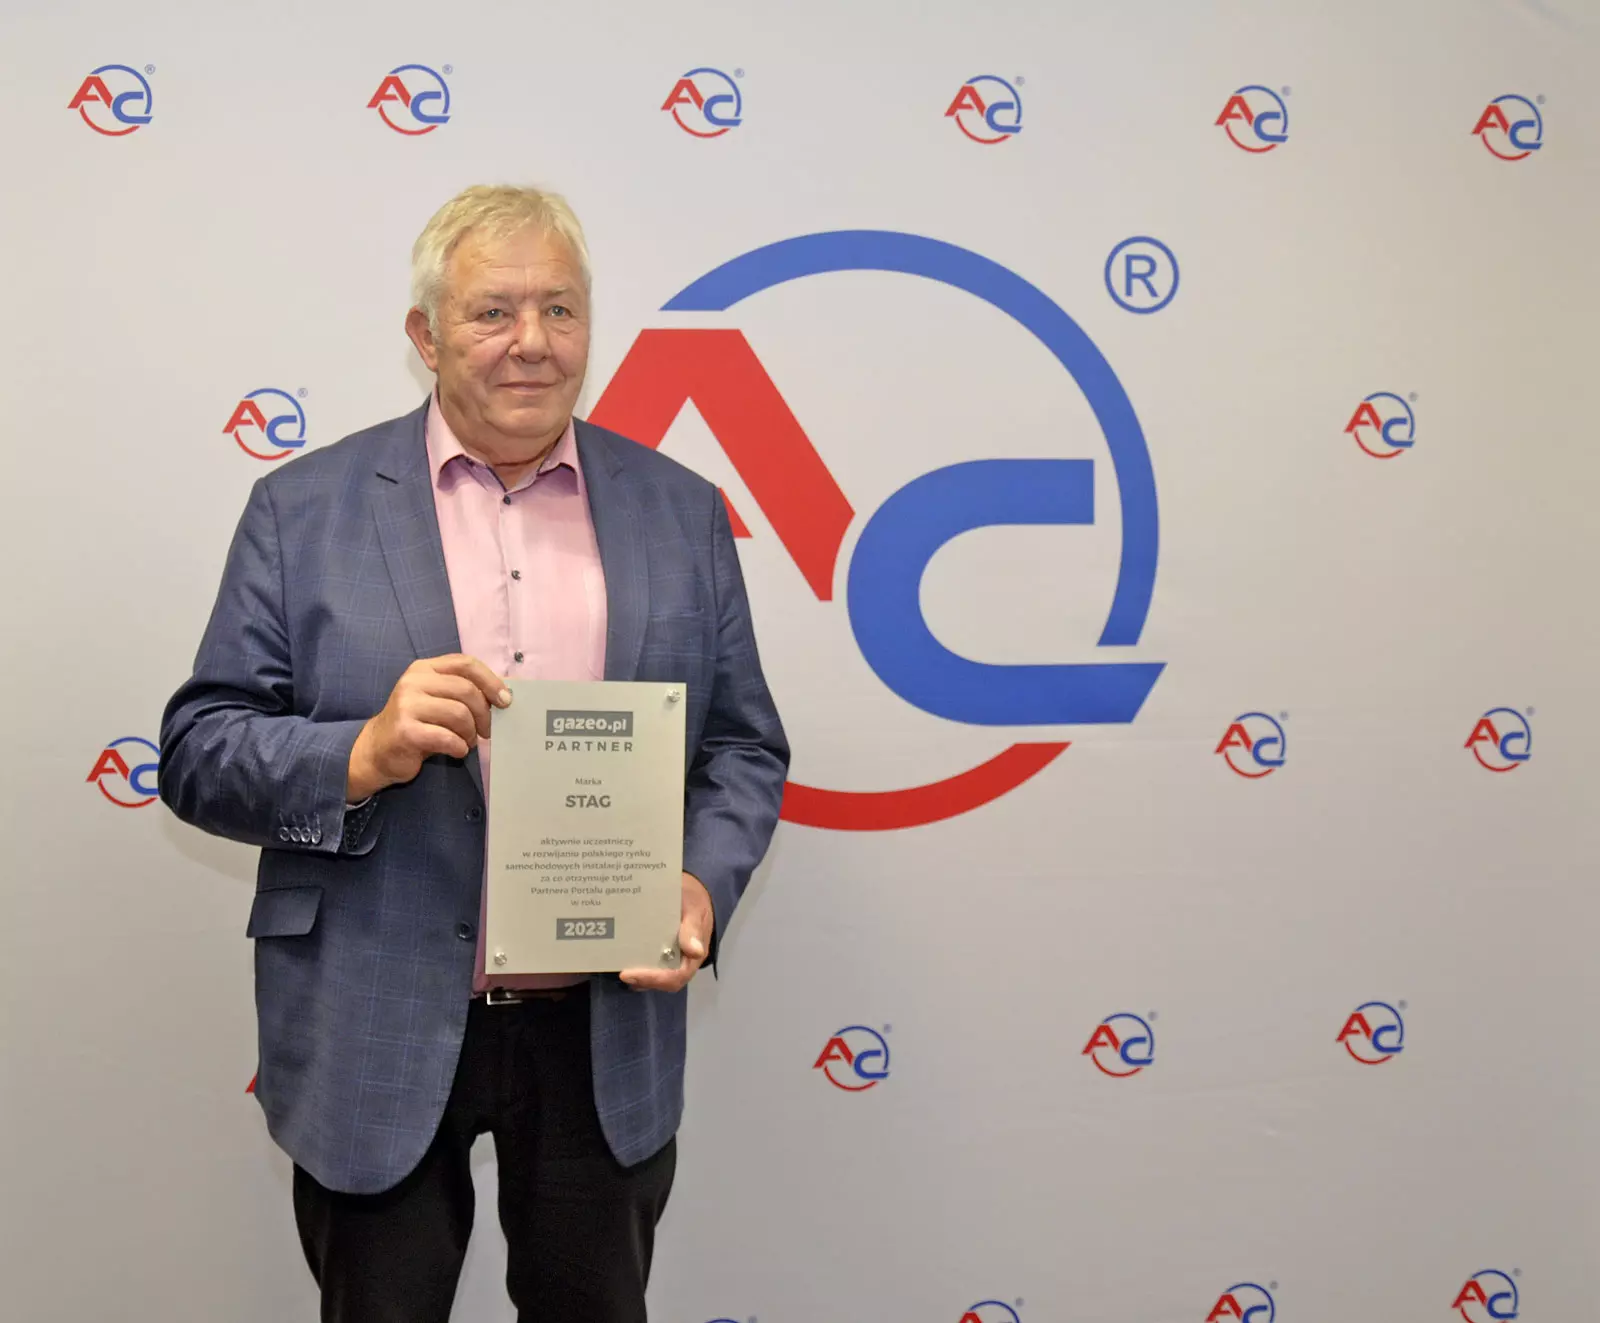 Certyfikat Partnera Portalu gazeo.pl dla marki STAG